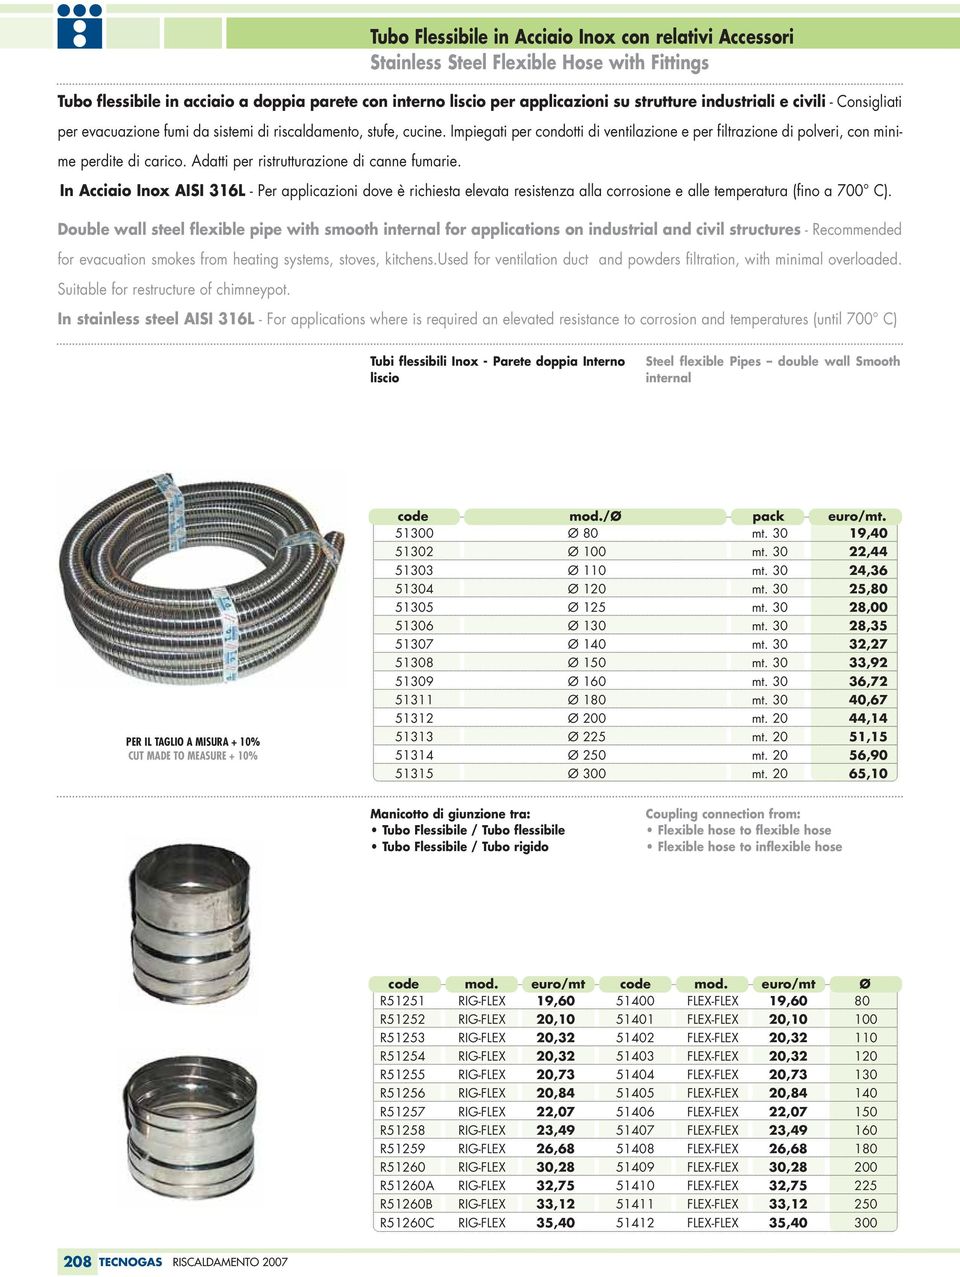 Adatti per ristrutturazione di canne fumarie. In Acciaio Inox AISI 316L - Per applicazioni dove è richiesta elevata resistenza alla corrosione e alle temperatura (fino a 700 C).